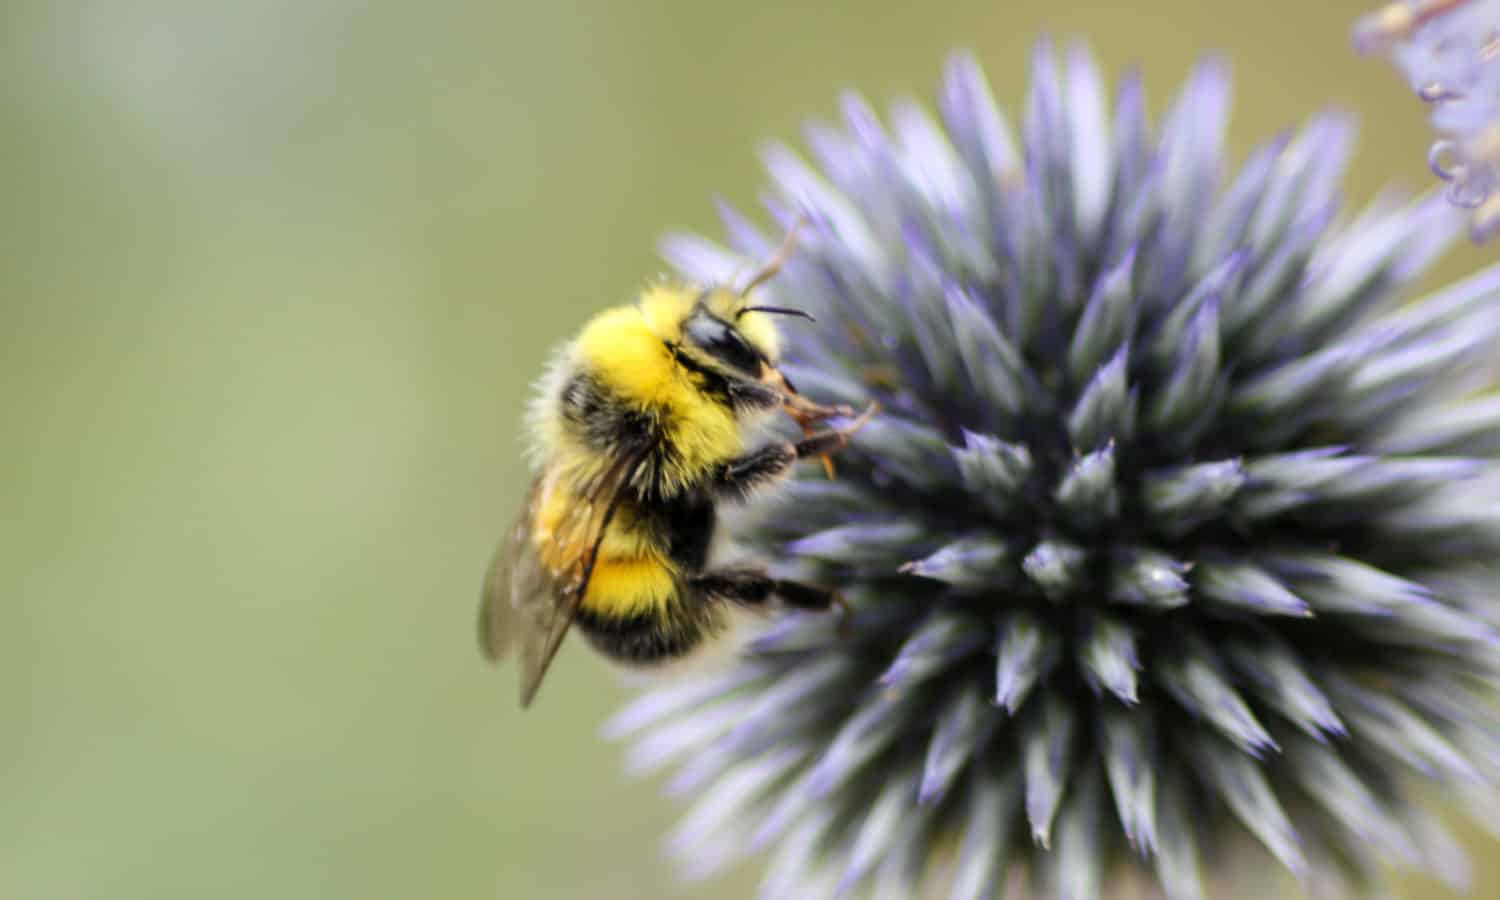 蜜蜂在食品体系发挥了重要作用作为多种作物免受草莓传粉者杏仁。在过去的20年里,蜜蜂数量越来越受到气候变化和工业农业的威胁。